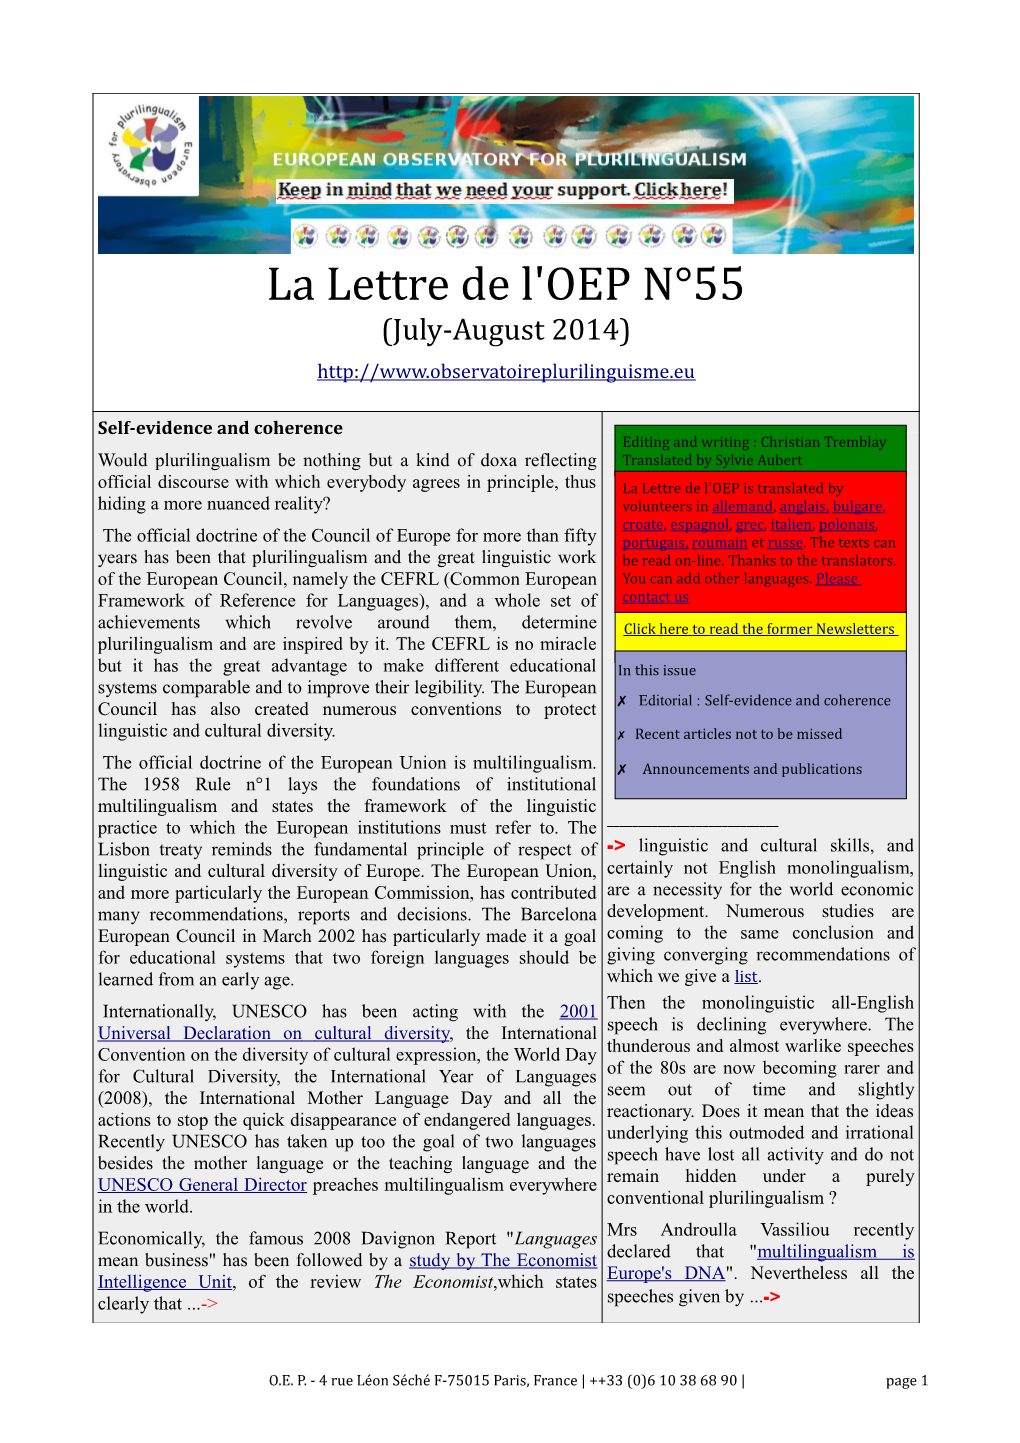 La Lettre De L'oep N°55 (July-August 2014)